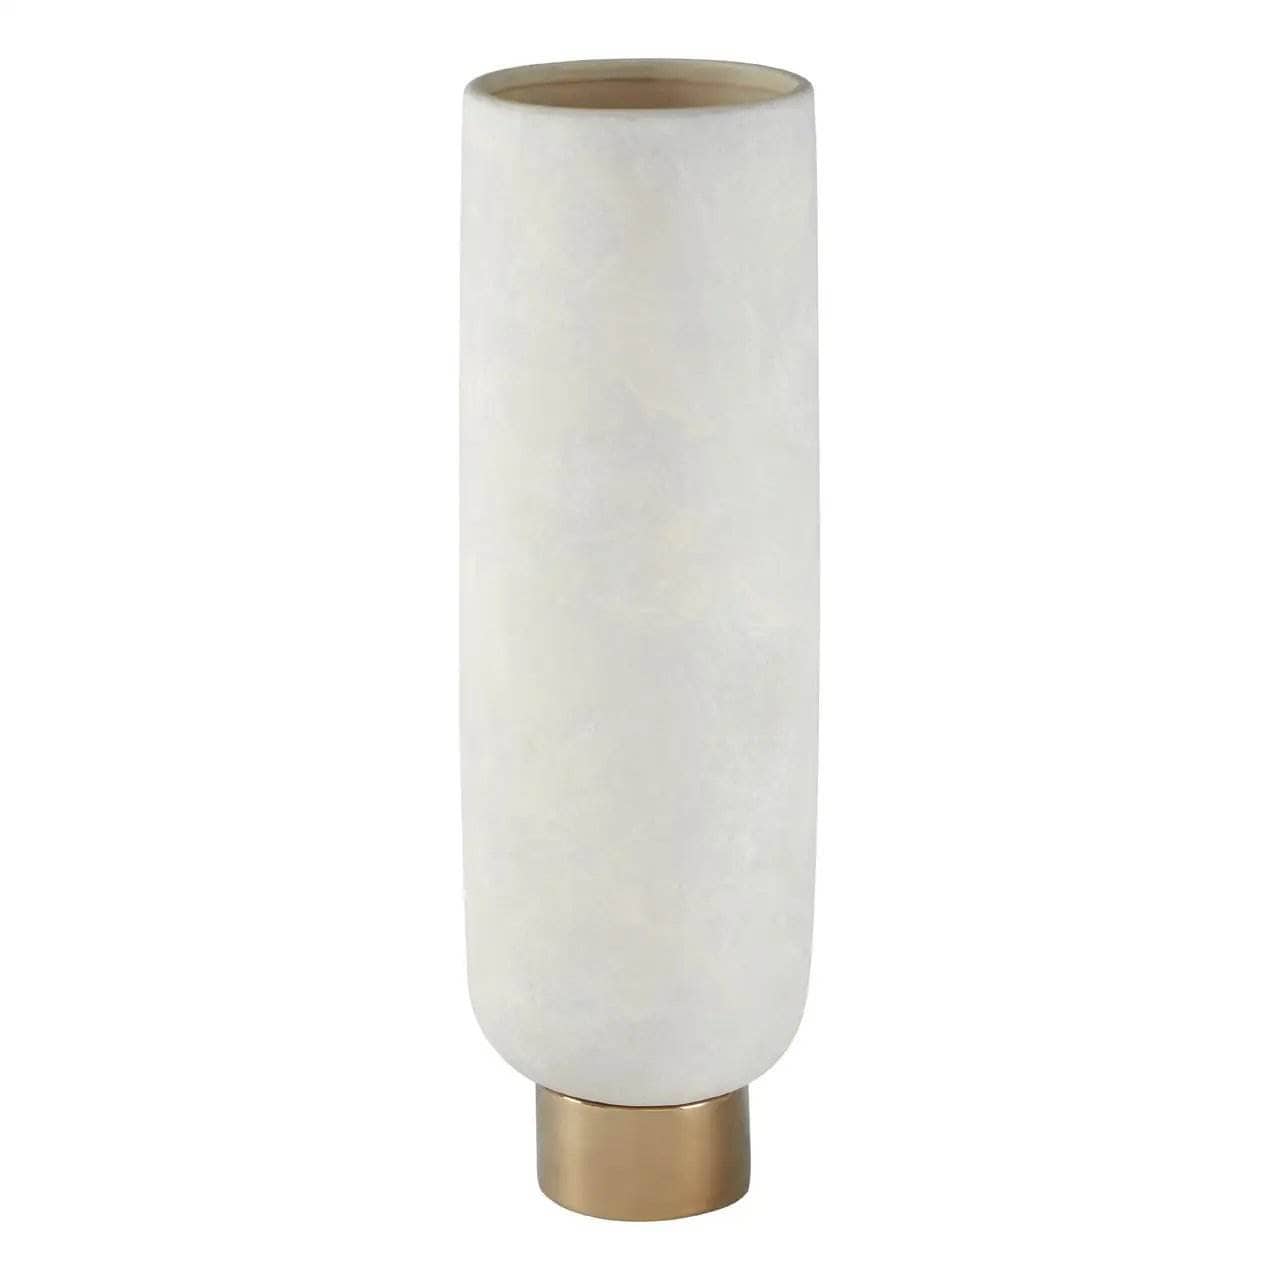  - Callie Large Pedestal Vase   -  60003512